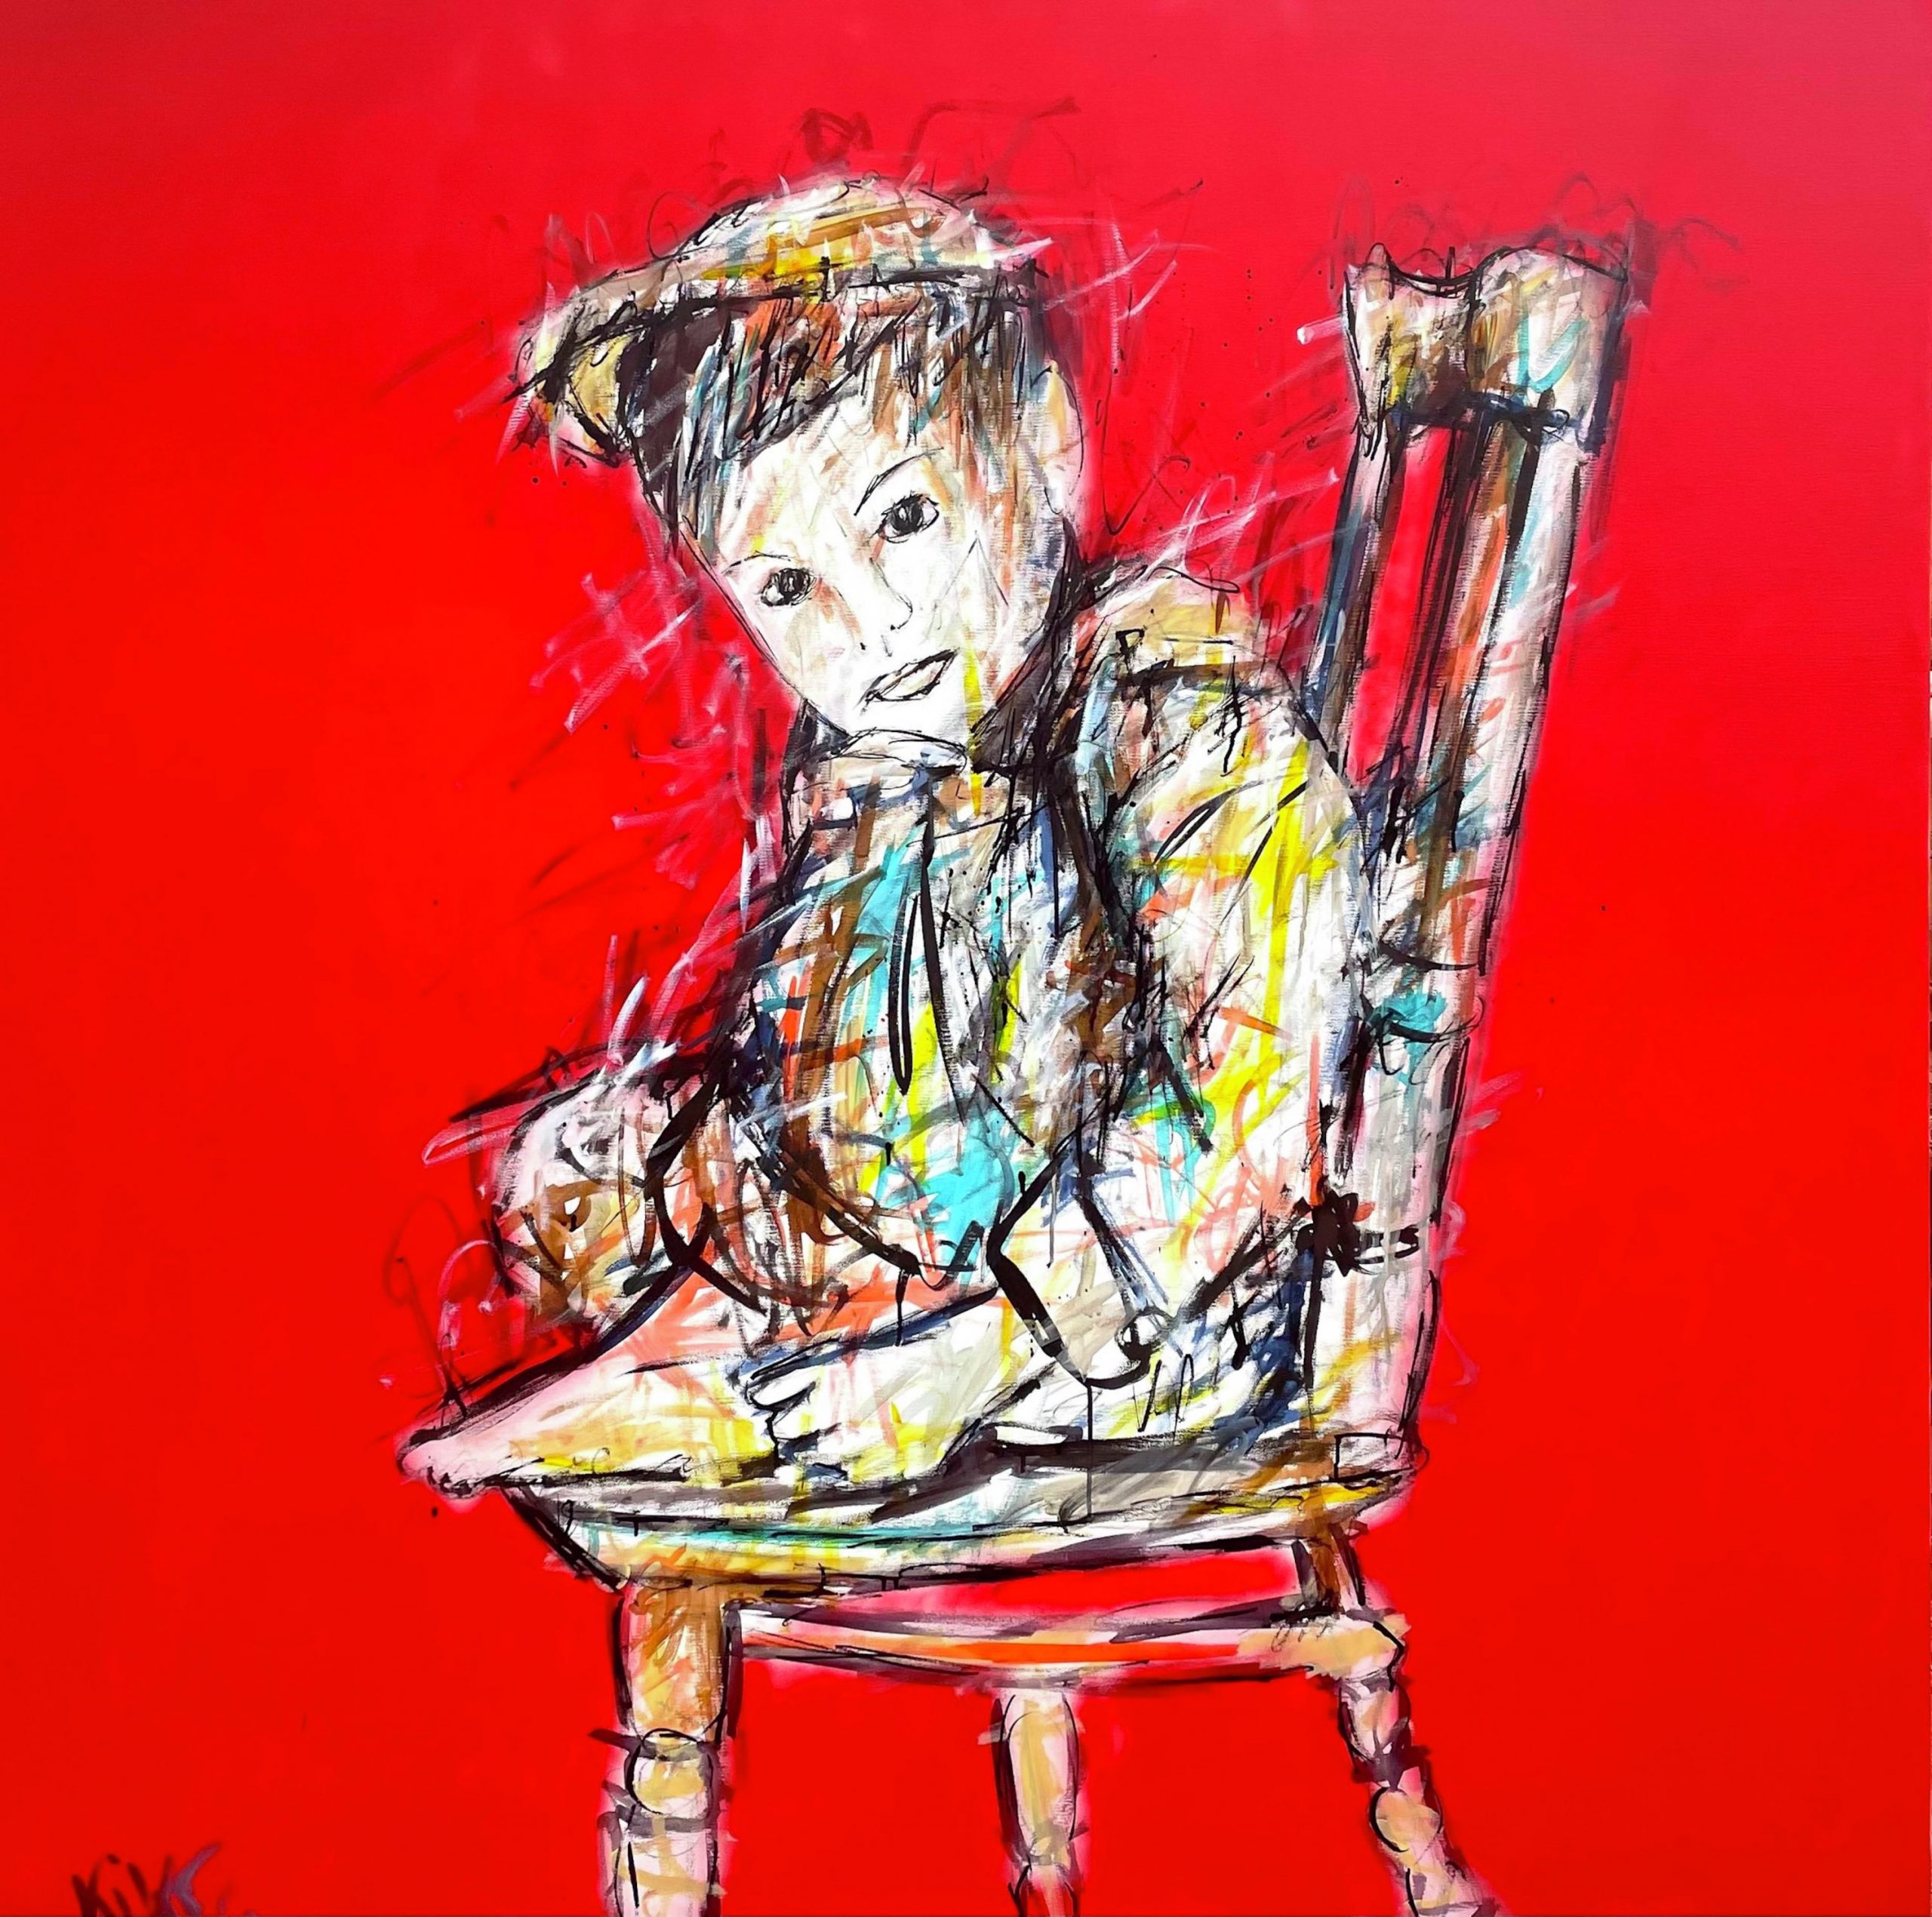 Enfant sur une chaise avec un beau sourire, jambe replier comme si il était timide, fond rouge, résine et encre de chine aérosol sur toile